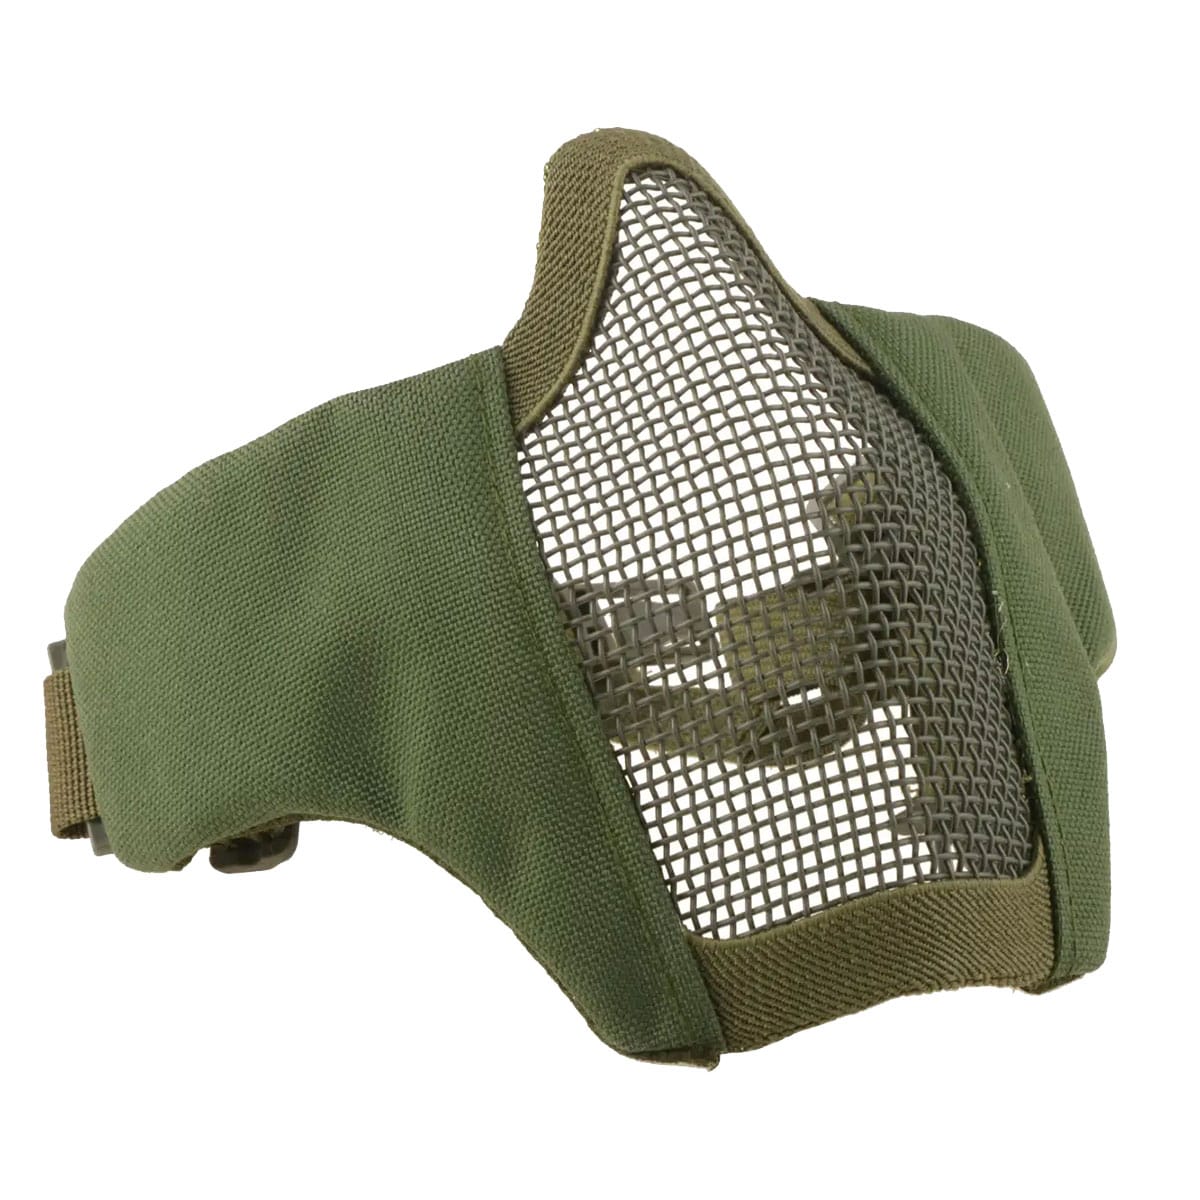 Maska ochronna typu Stalker GFC Tactical Evo z montażem do hełmu FAST - Oliwkowa